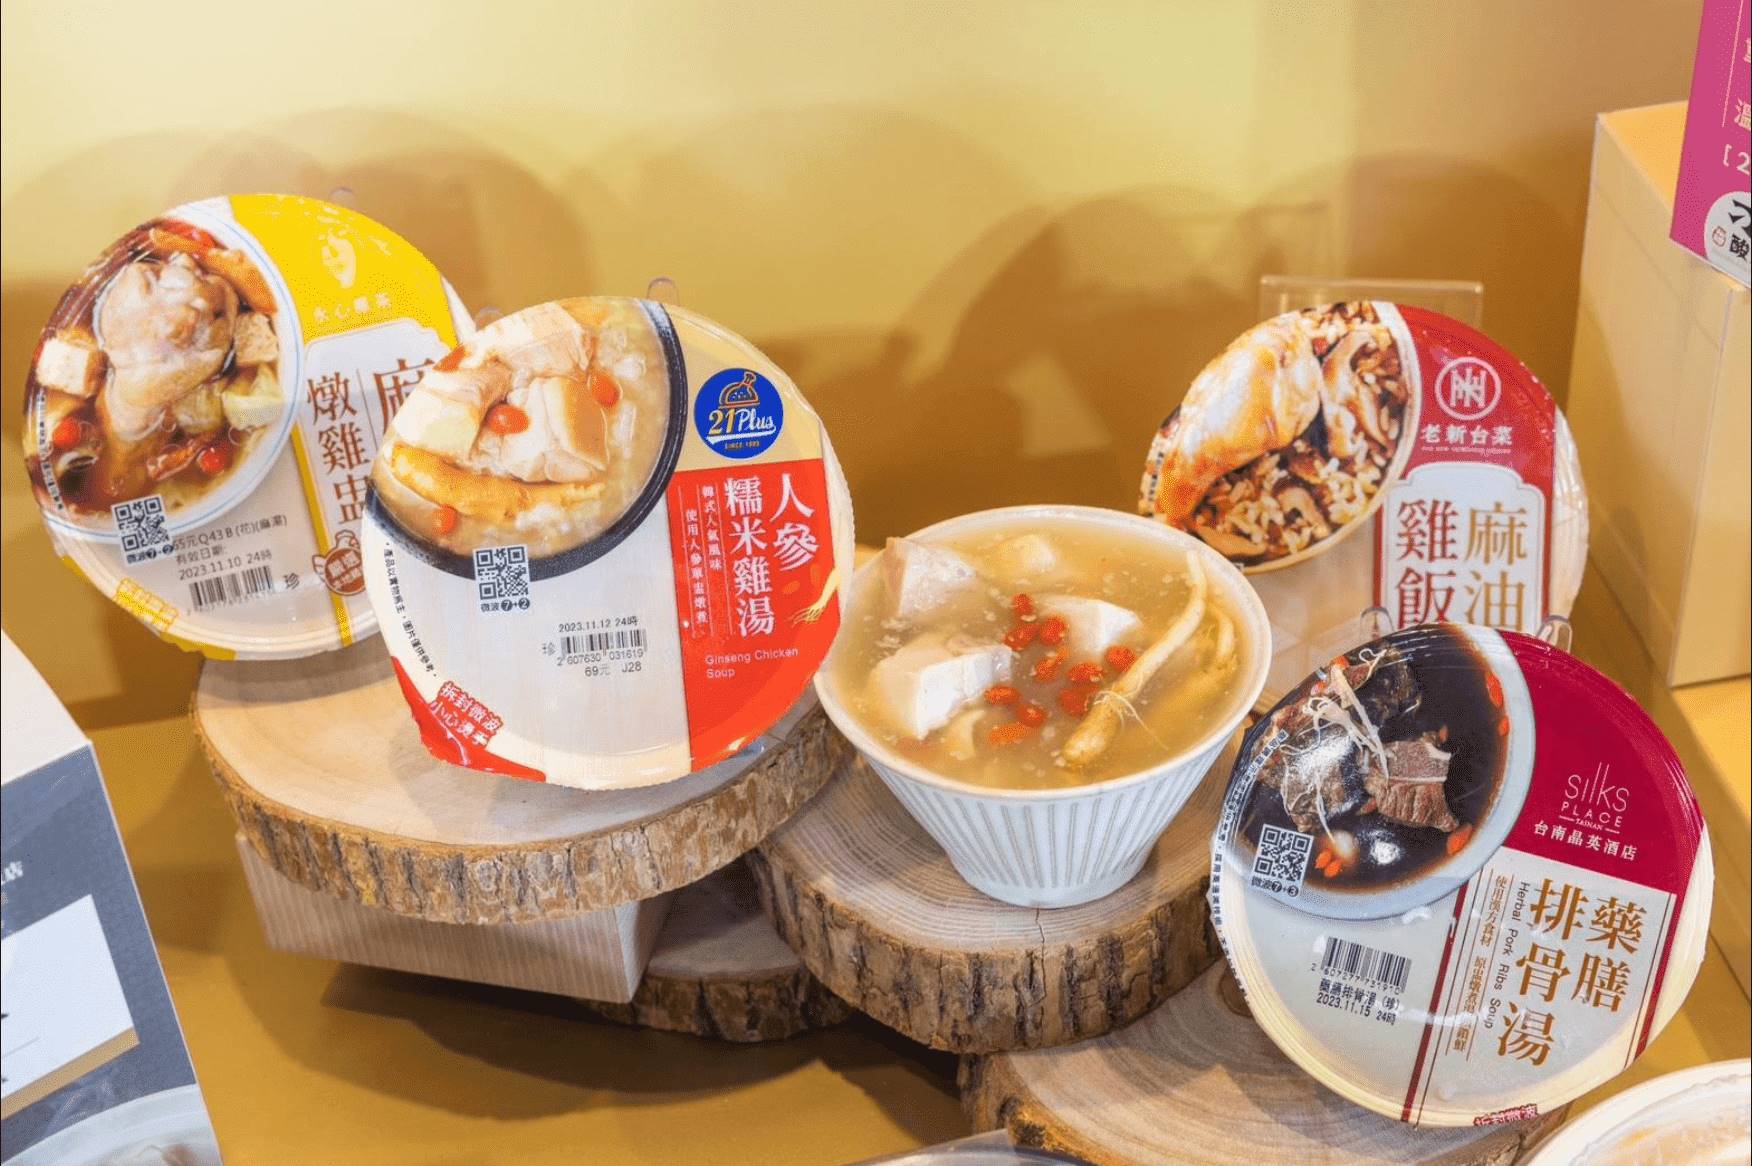 7-ELEVEN與21風味館、台南晶英酒店、老新台菜、永心鳳茶推出麻油雞湯、藥膳排骨、人蔘雞湯等食補湯品。